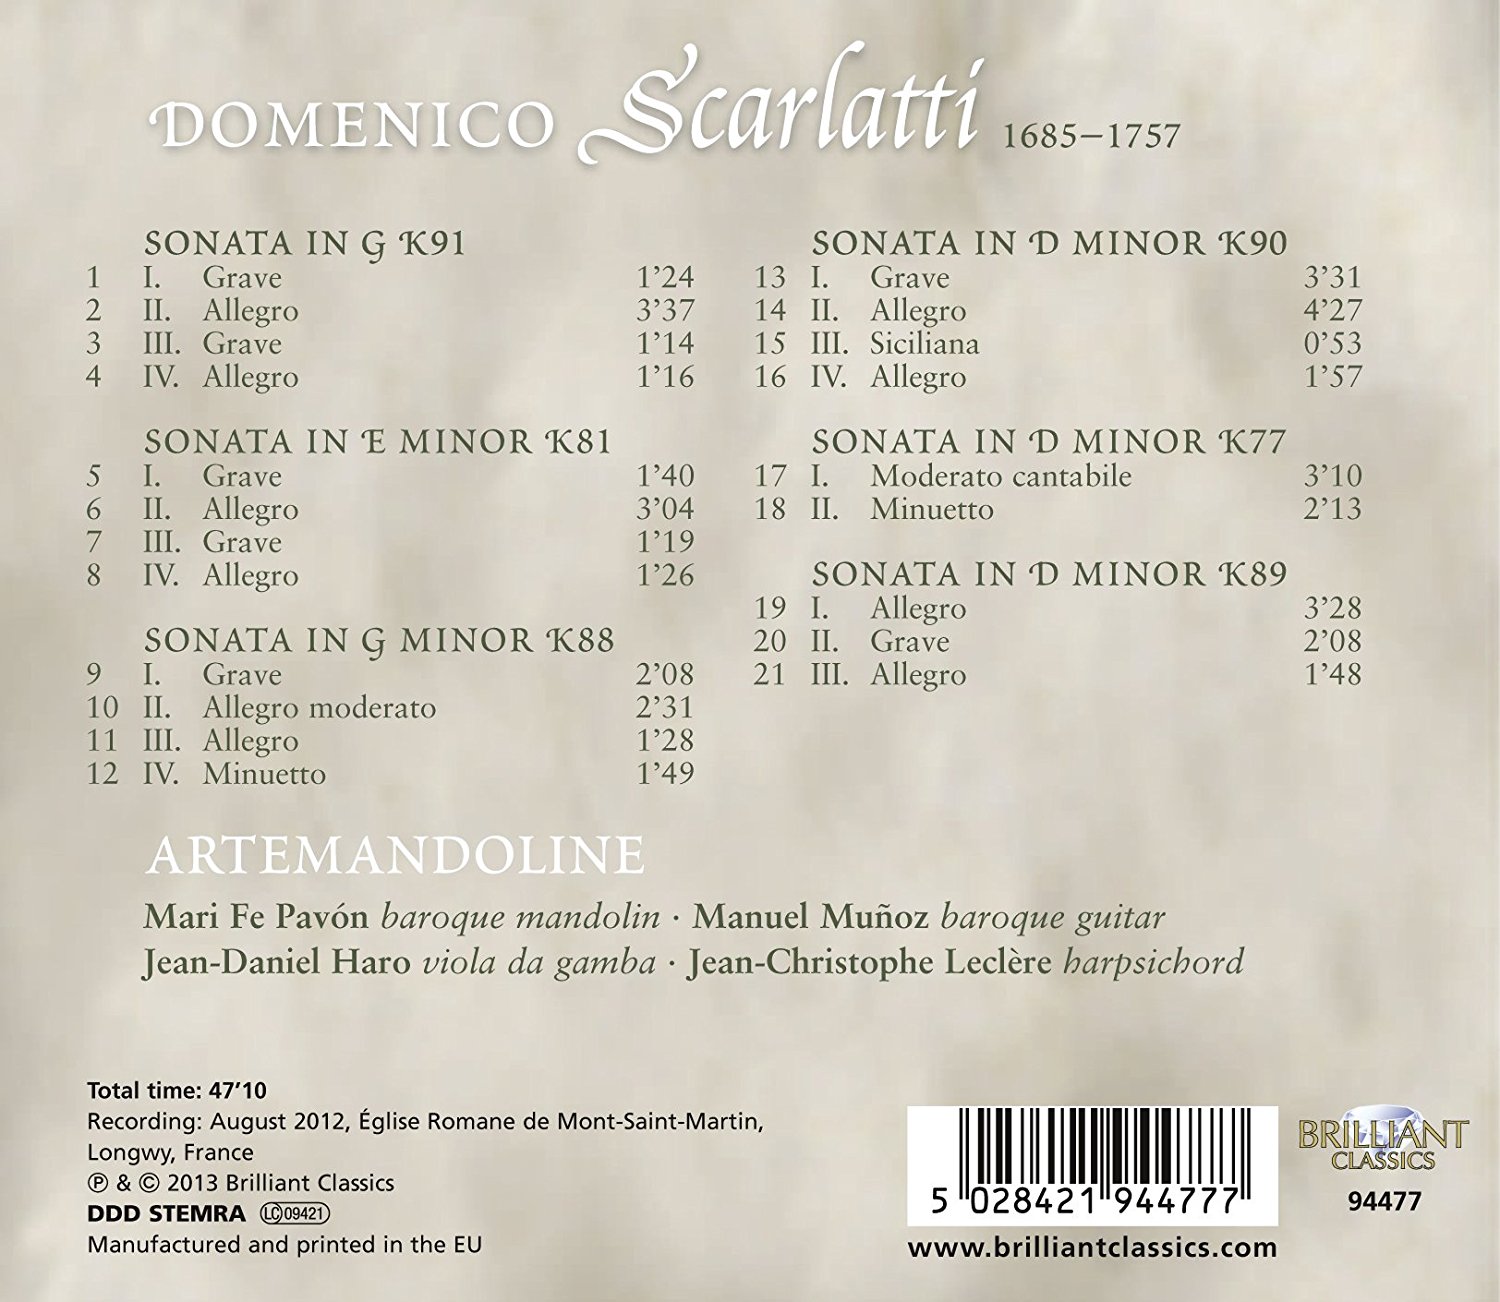 Domenico Scarlatti: discographie sélective - Page 5 71jjk411